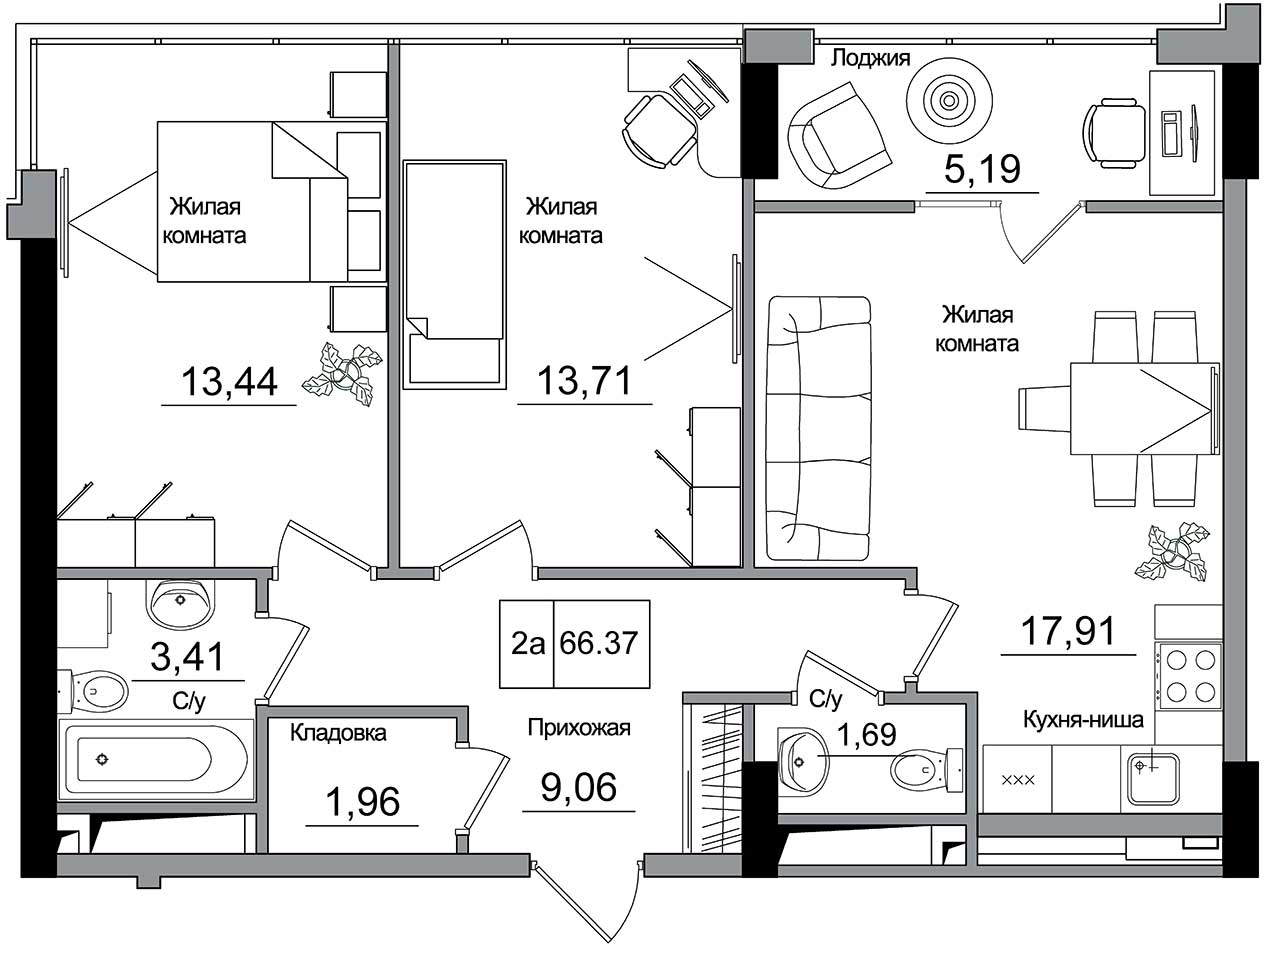 Планировка 2-к квартира площей 66.37м2, AB-16-10/00006.